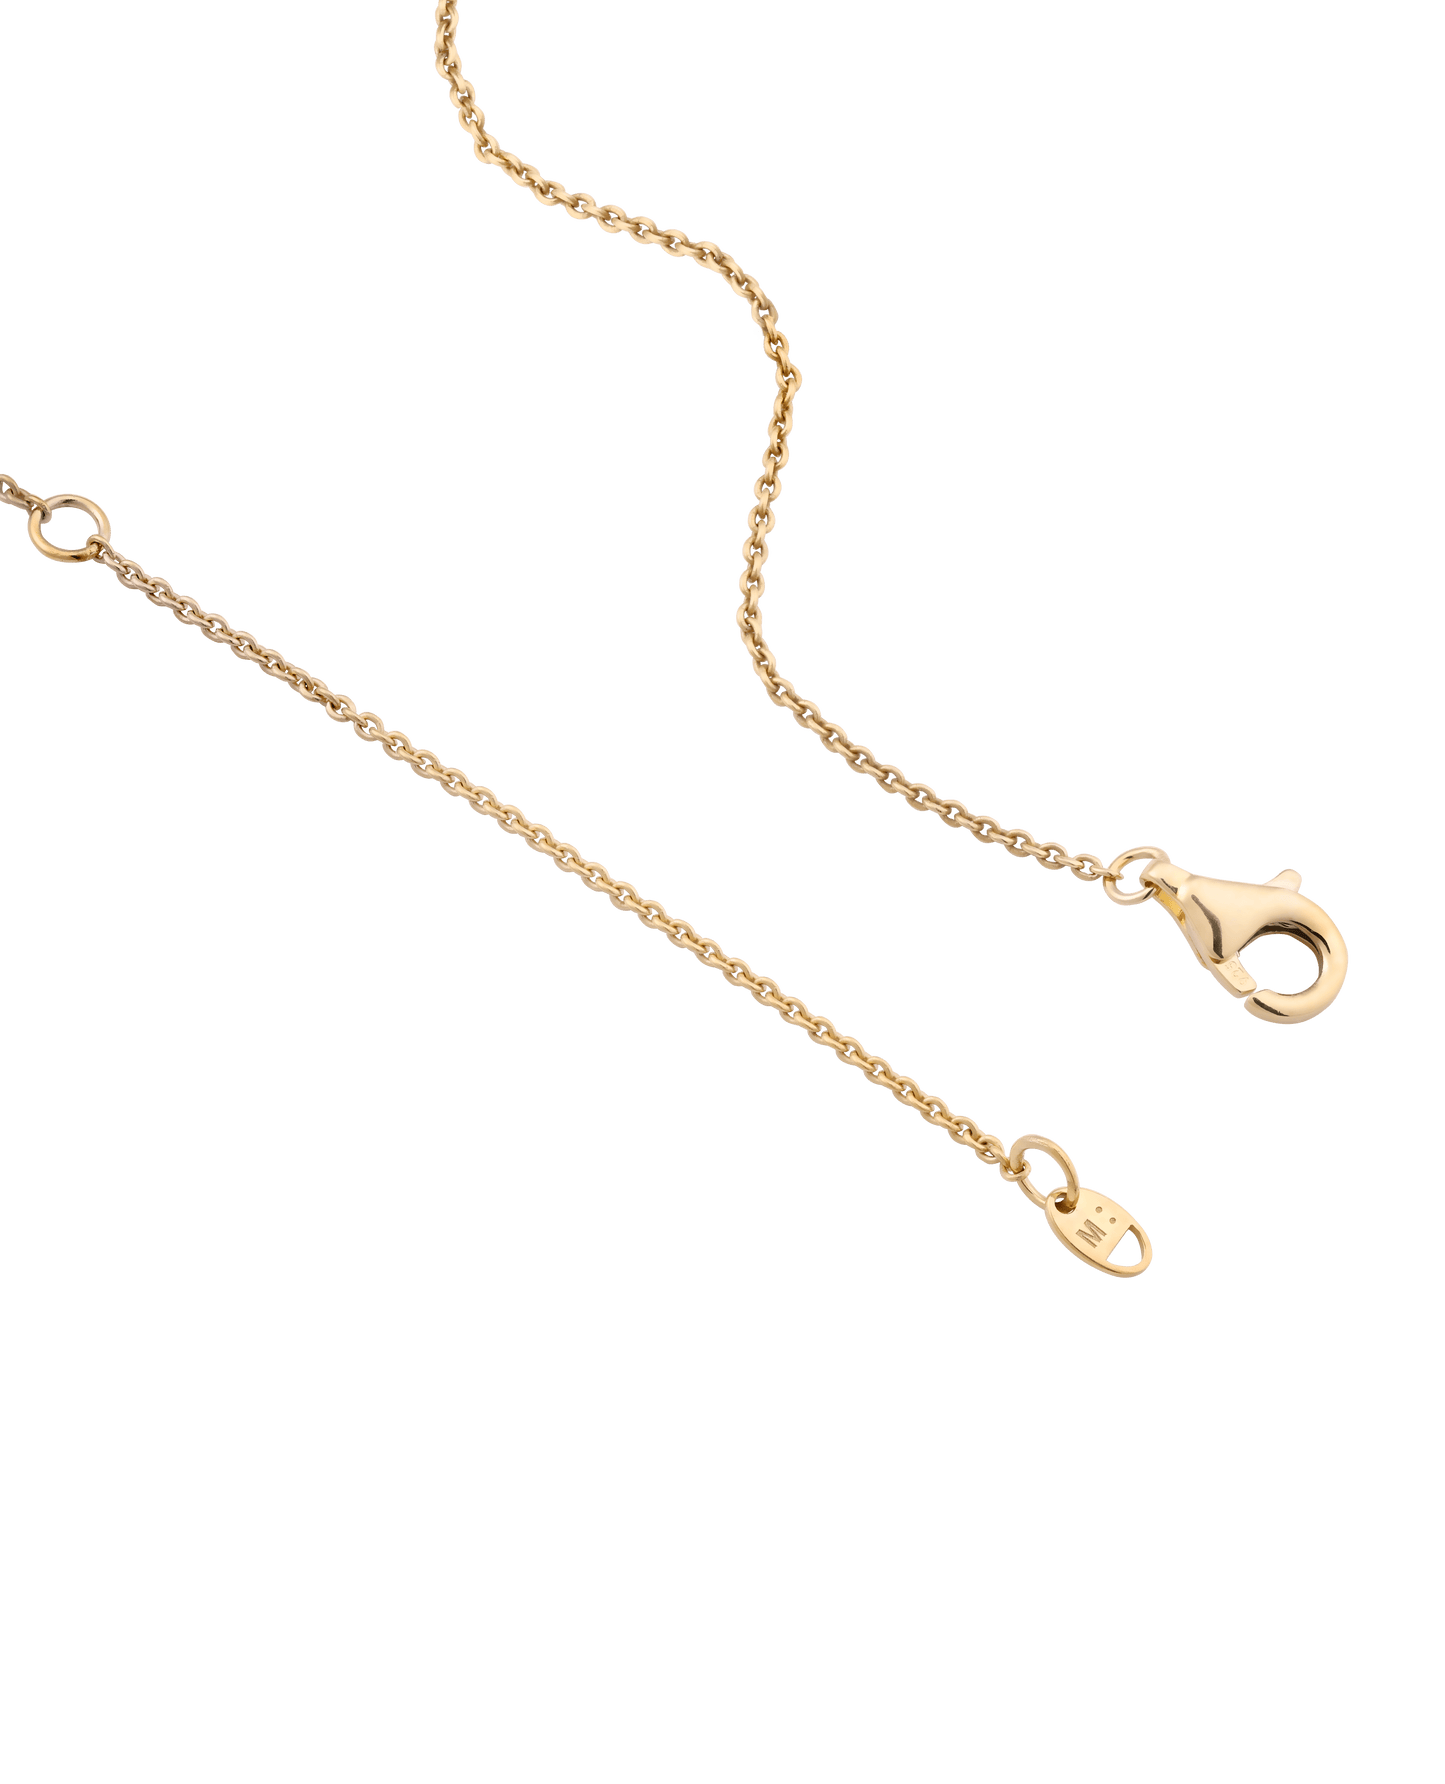 Birthstone Taglet Necklace - 18K Rose Vermeil Necklaces magal-dev 